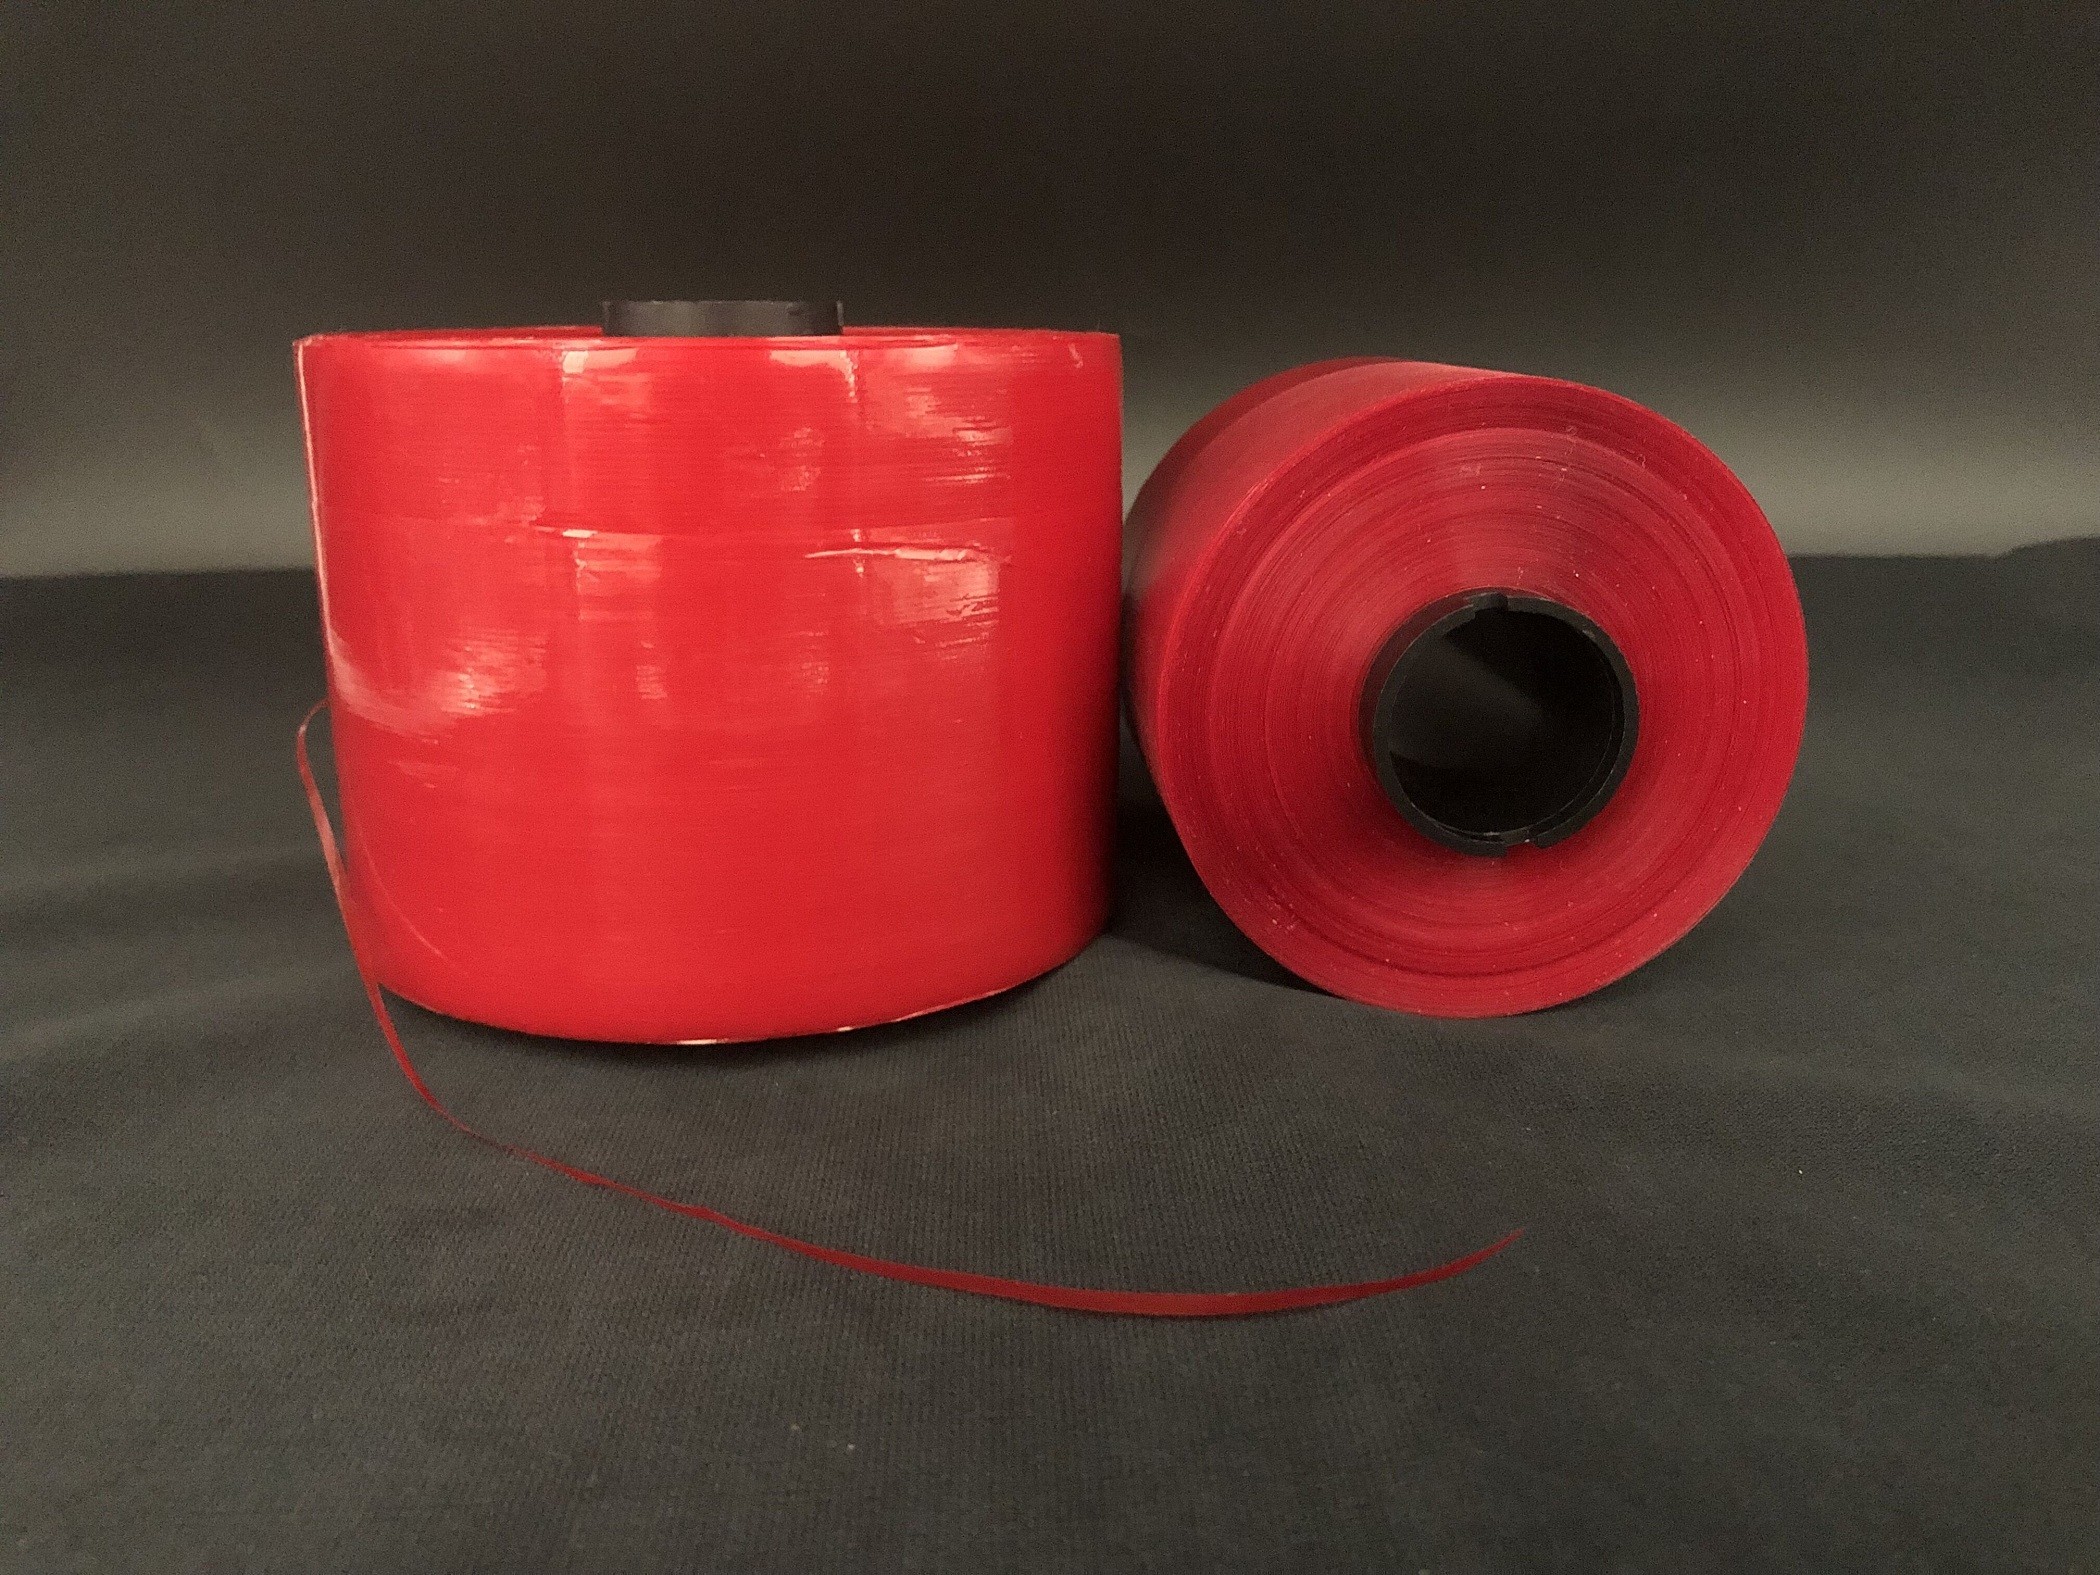 5mm τεράστια ρόλων συγκολλητική συνήθειας ταινία δακρυ'ων ασφάλειας κόκκινη για την τσάντα εγγράφου DHL που συσκευάζει και ανοικτή